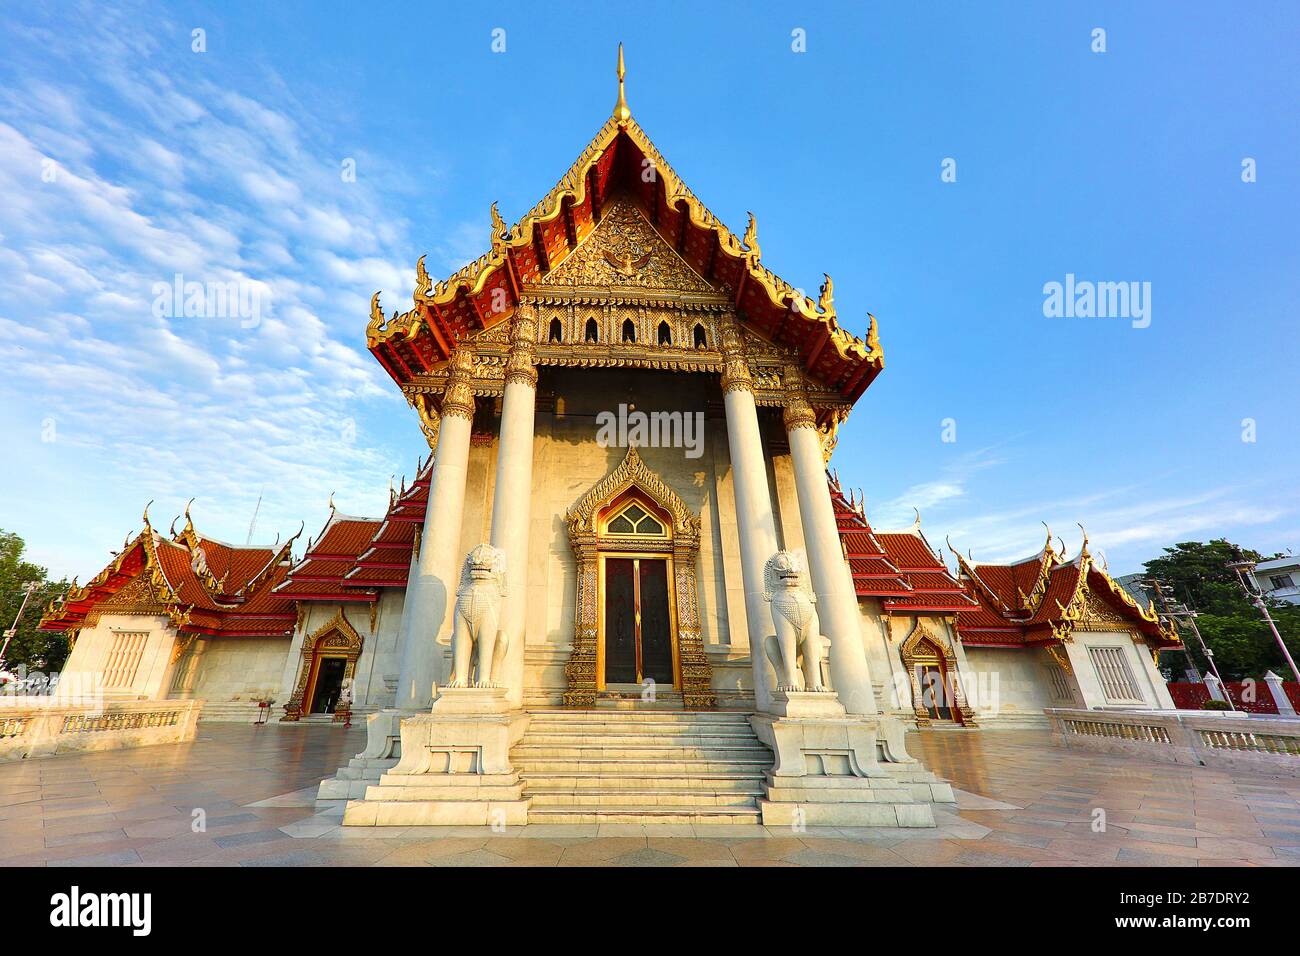 Buddhistischer Marmortempel, auch Wat Benchamabopit Dusitvanaram in Bangkok, Thailand genannt. Stockfoto